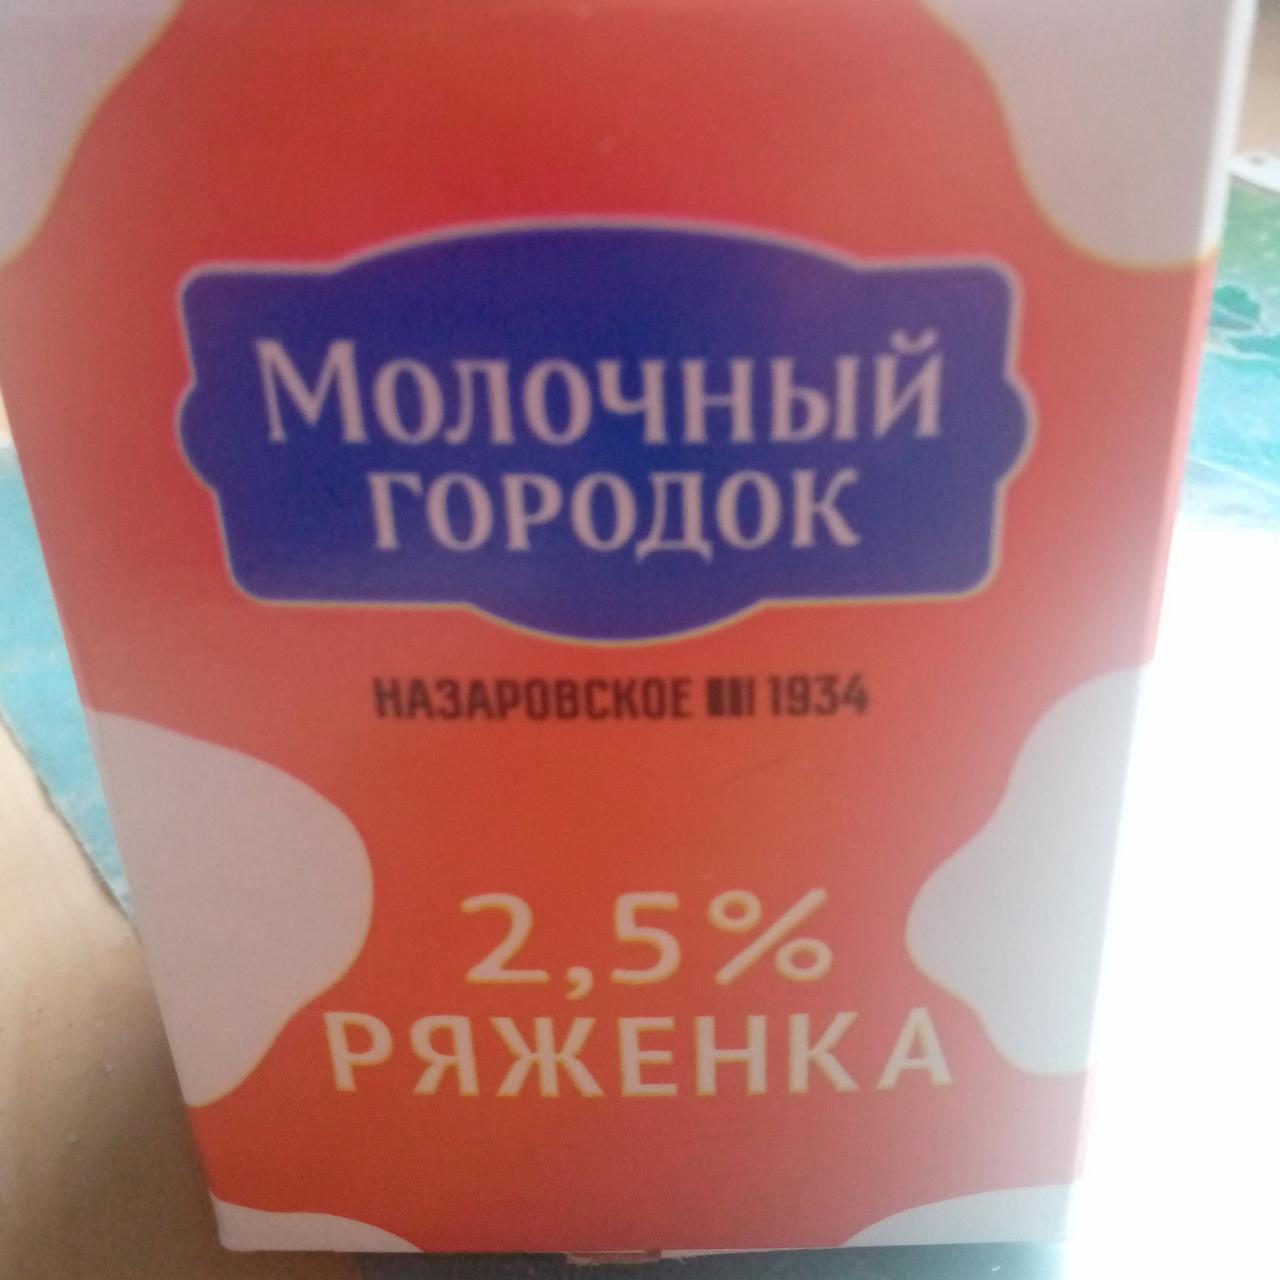 Фото - Ряженка 2,5% Молочный городок